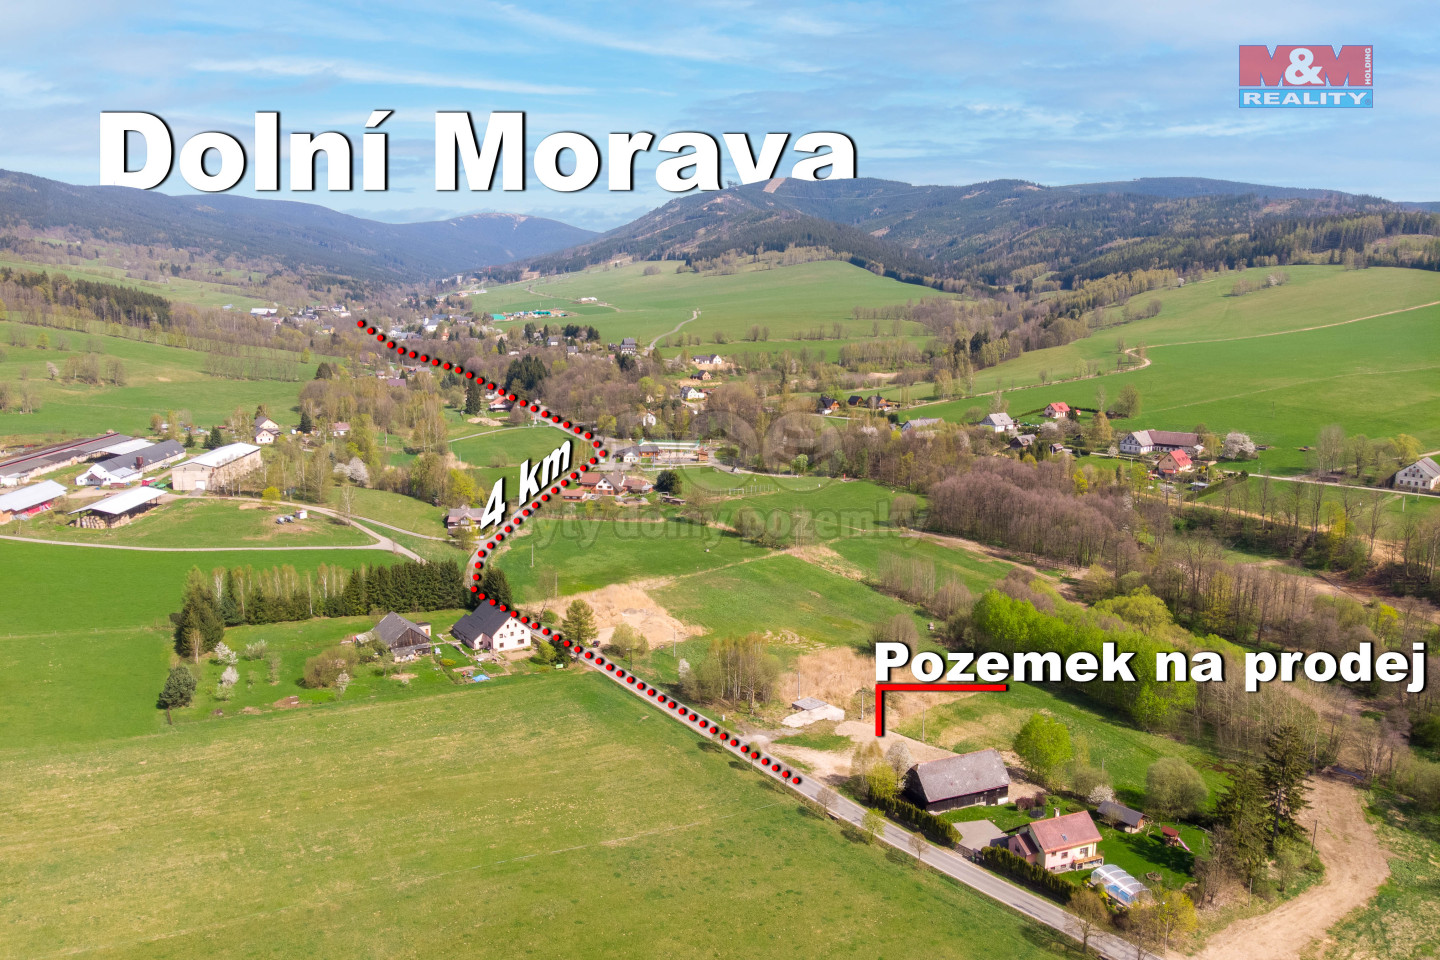 Pozemek Dolni Morava-18.jpg